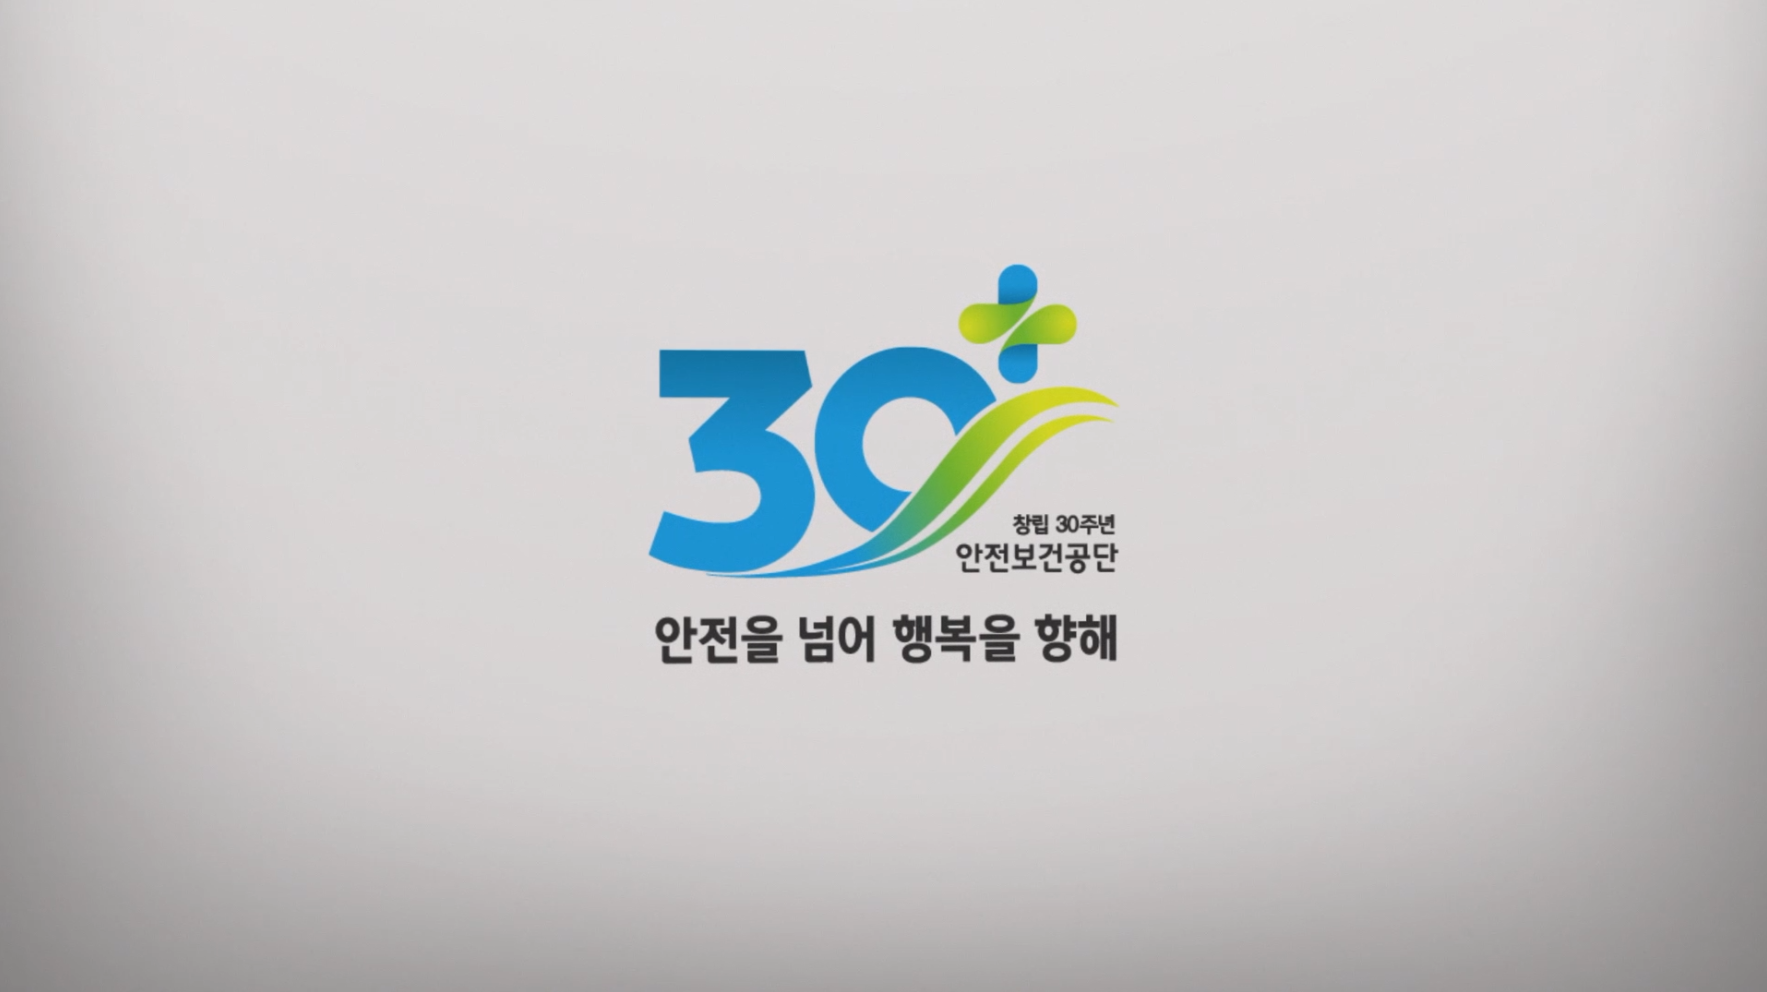 안전보건공단 창립 30주년 기념 영상(국문)